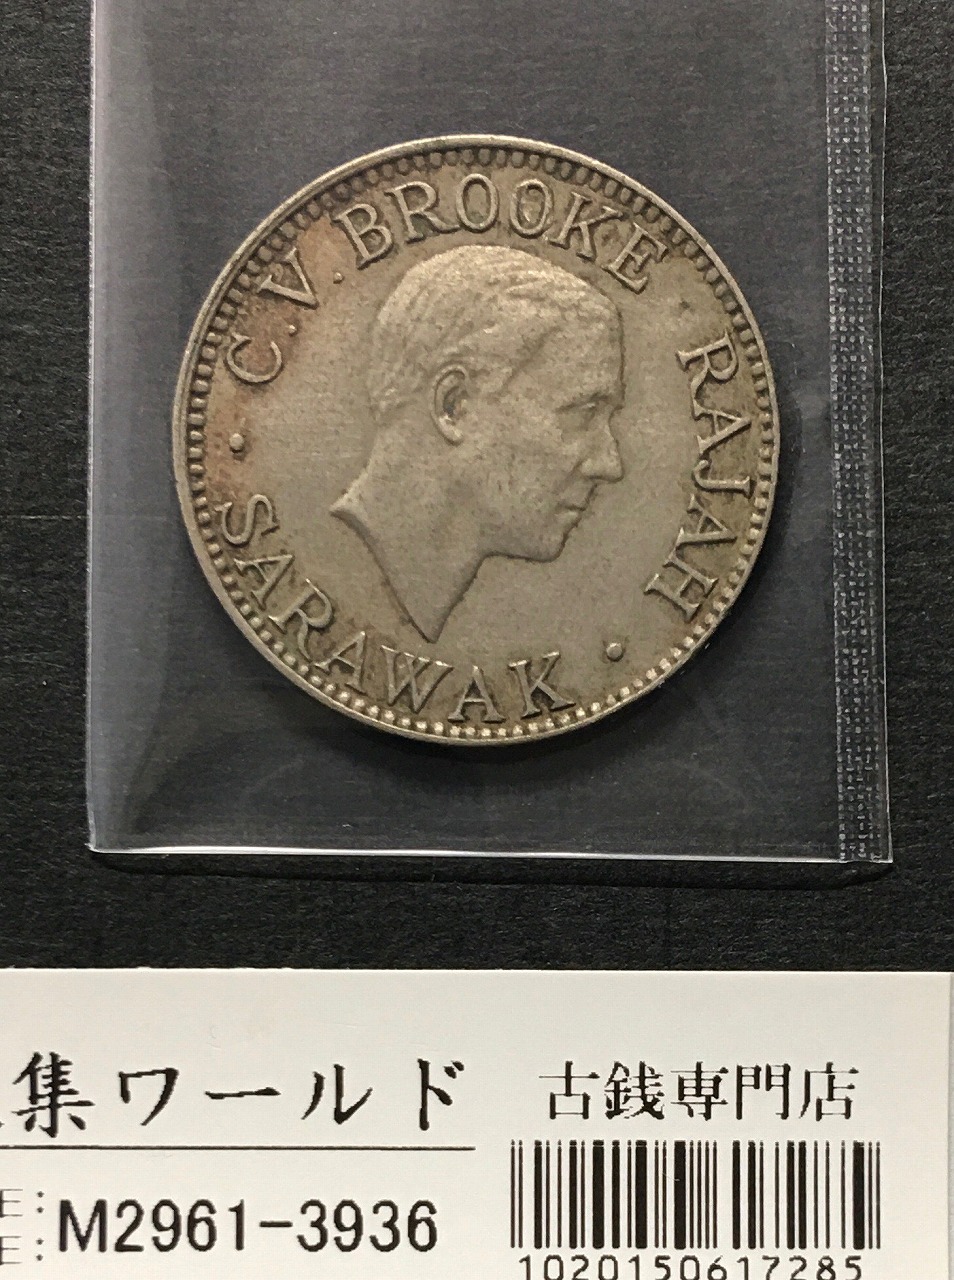 マーレシア貨幣/イギリス領 10セント白銅貨 1934年銘 チャールズ・ブルック像 美品